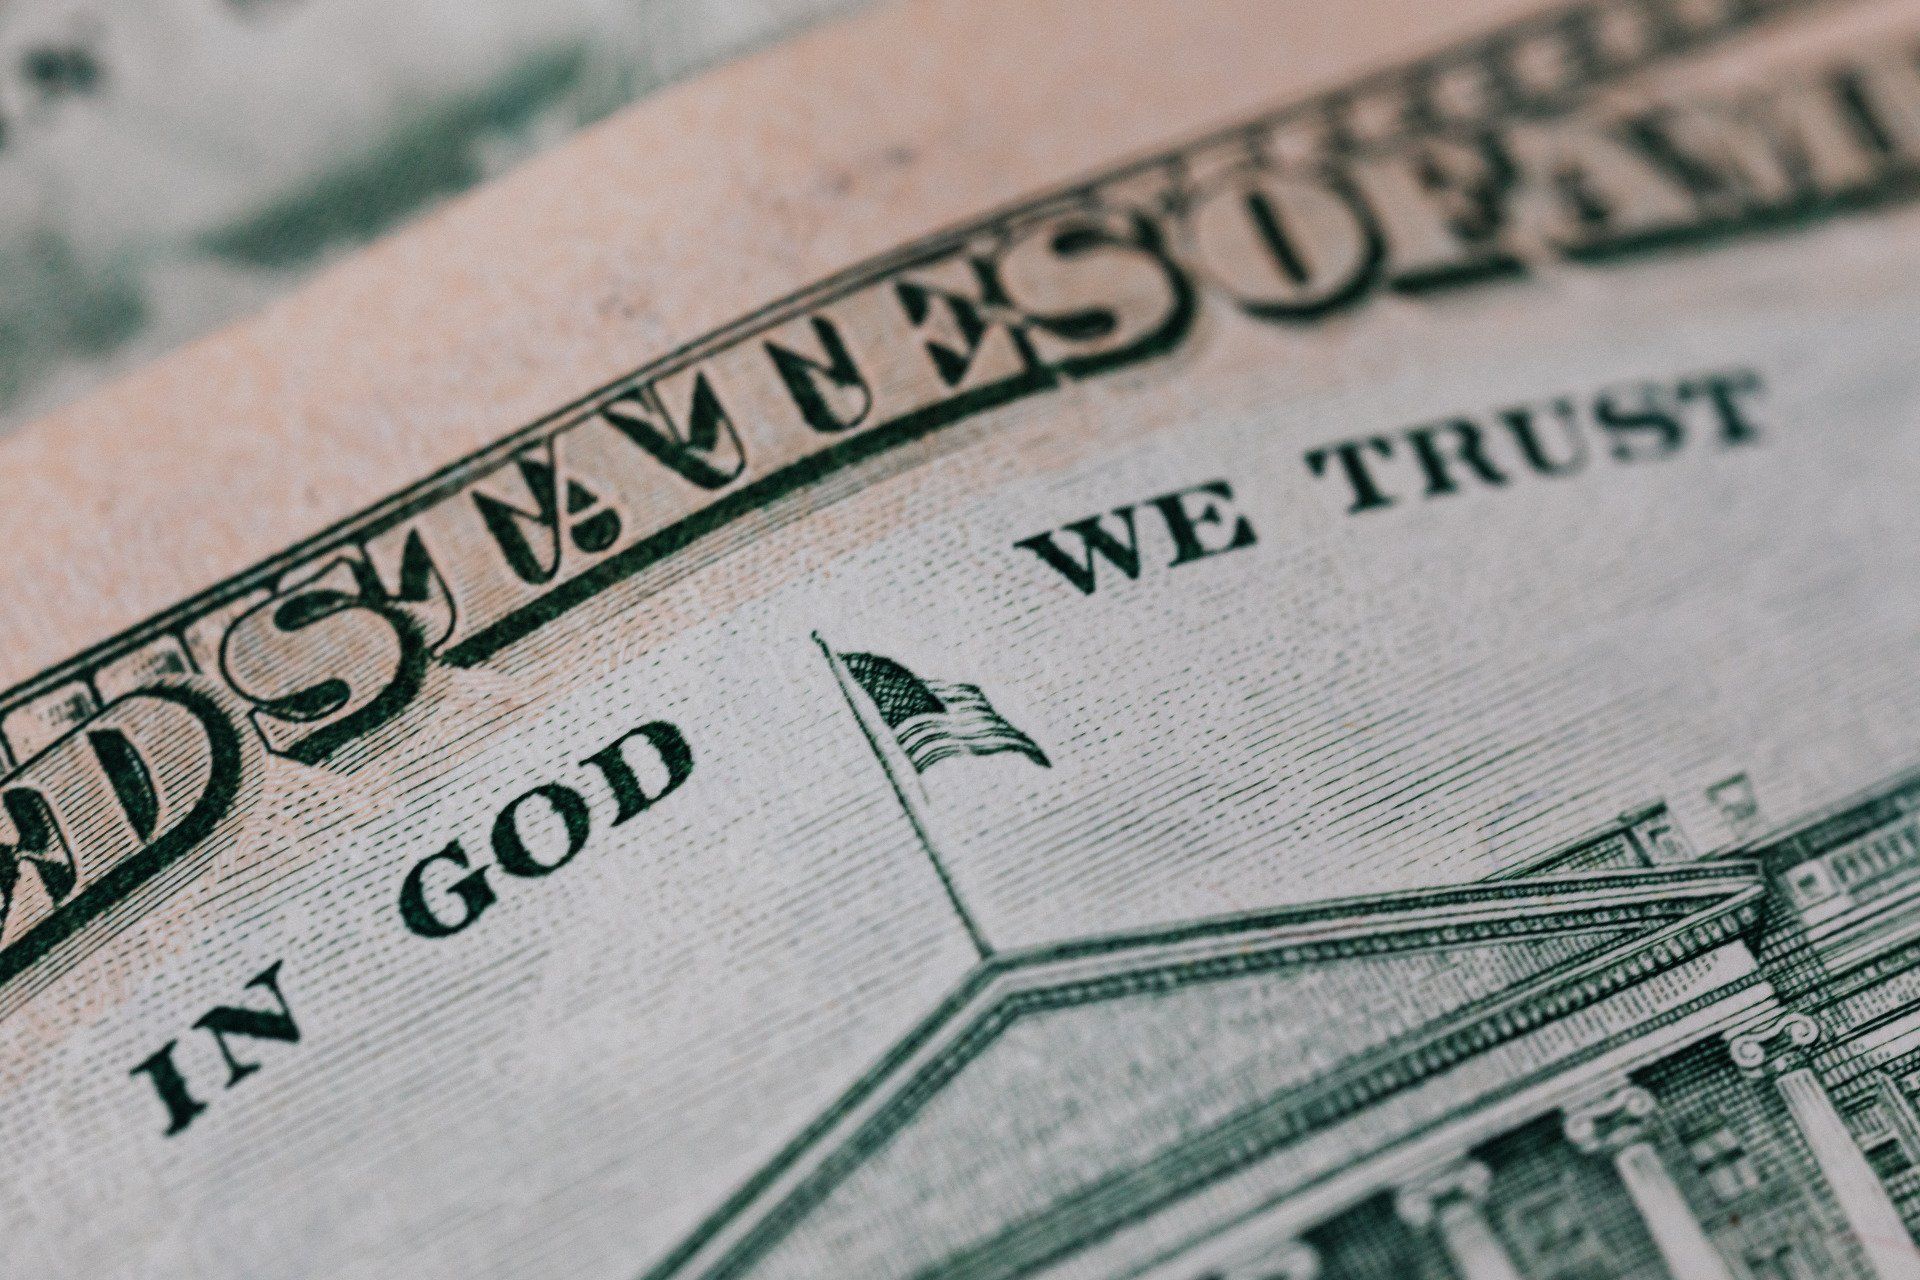 In God We Trust on a dollar bill